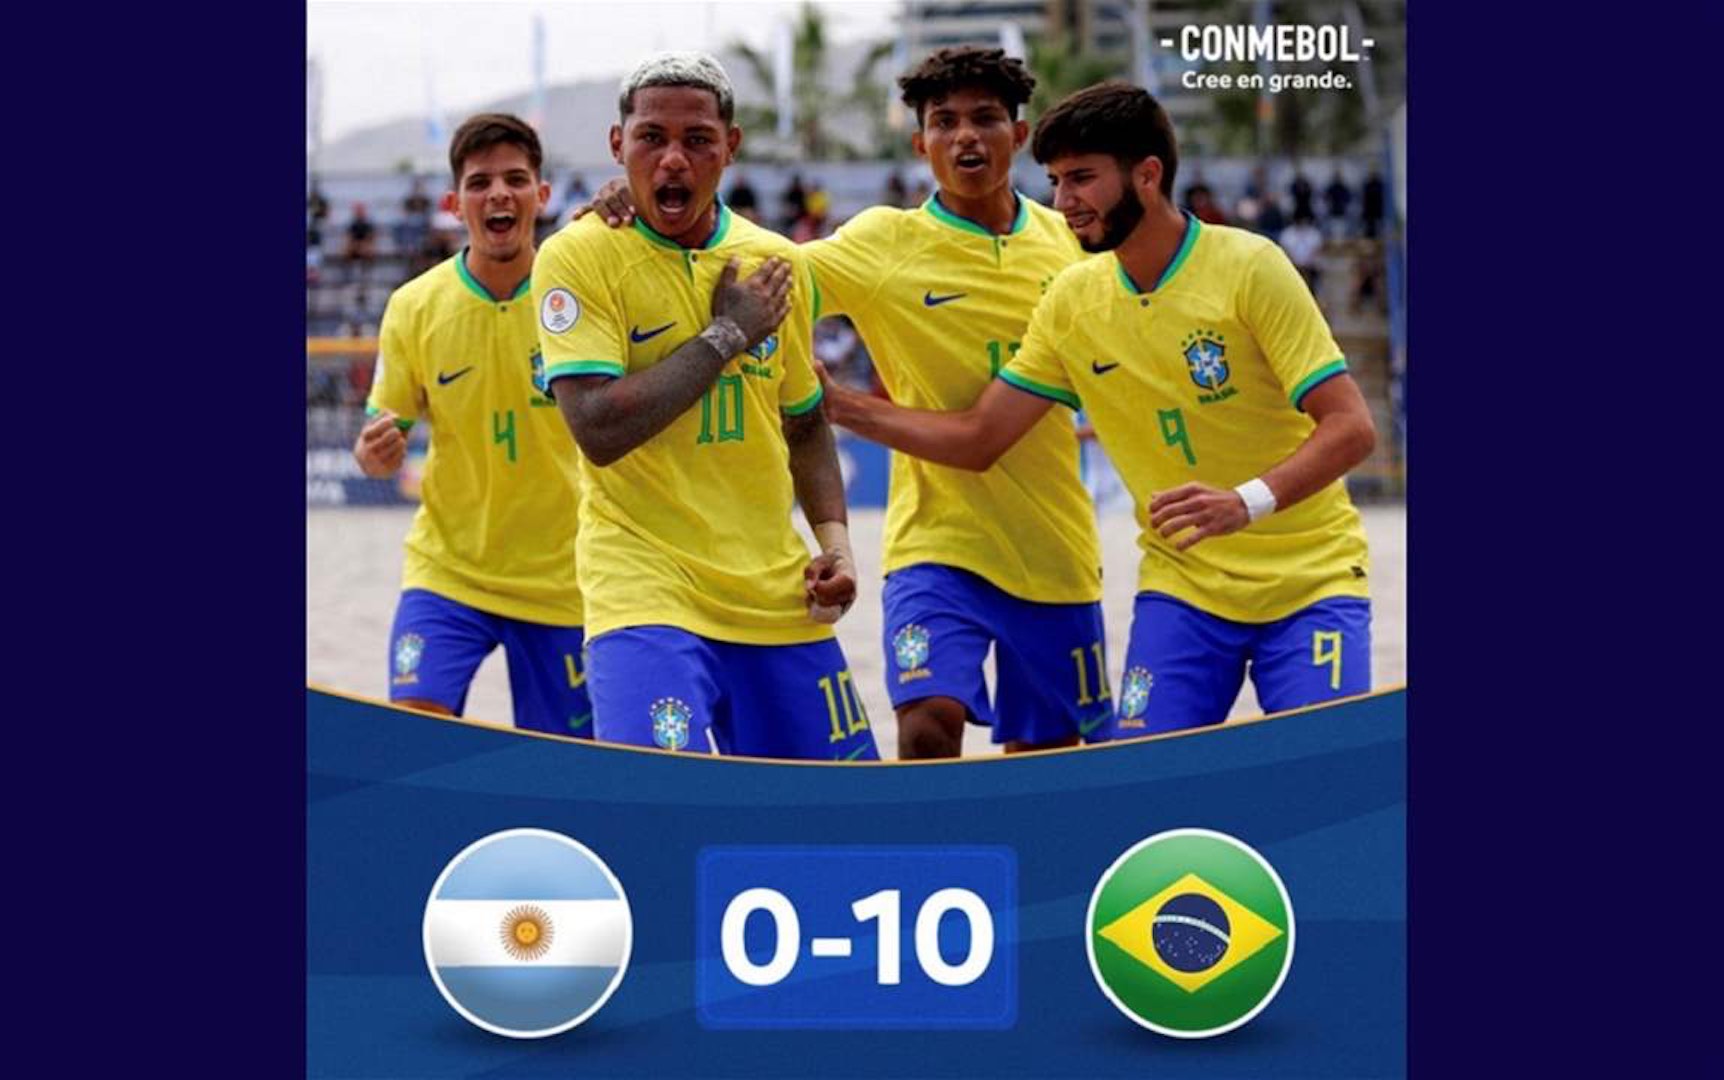 منتخب البرازيل تحت 20 سنة يسحق الأرجنتين بنتيجة 10-0 في أداء أسطوري